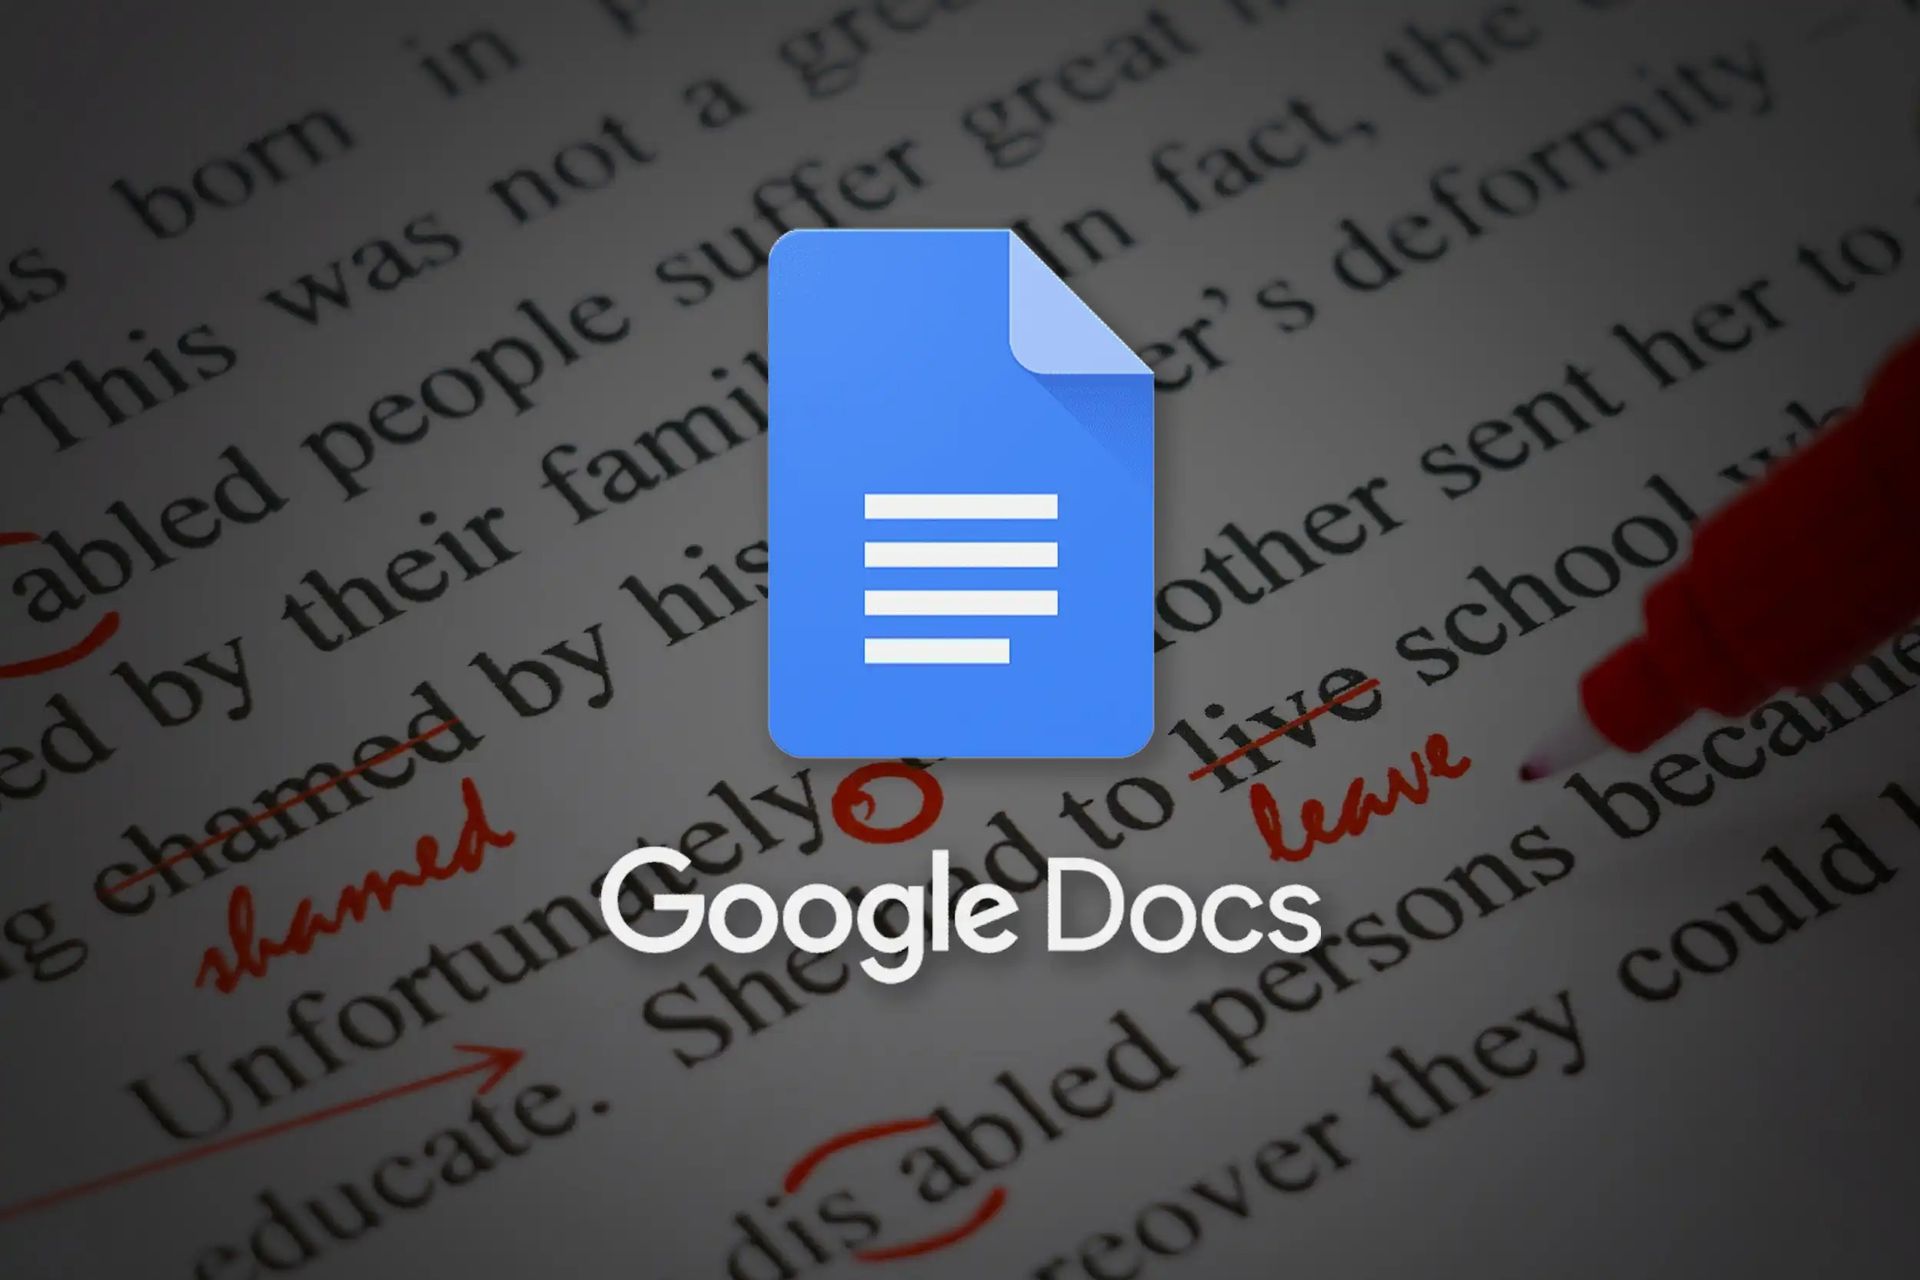 Come raddoppiare lo spazio in Google Docs?